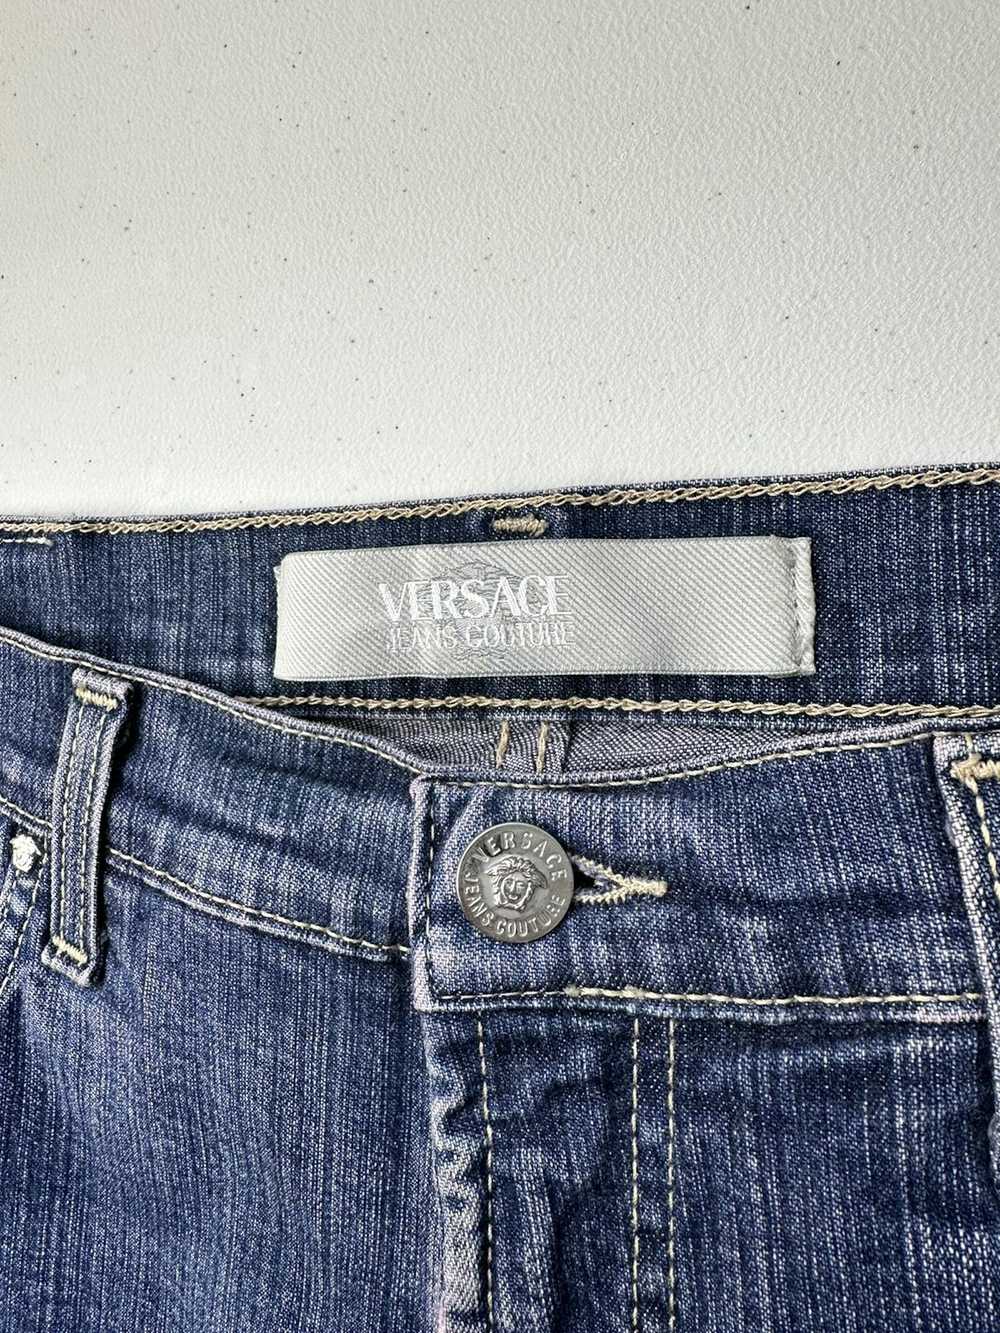 Jean × Versace Jeans Couture × Vintage Vintage 90… - image 7